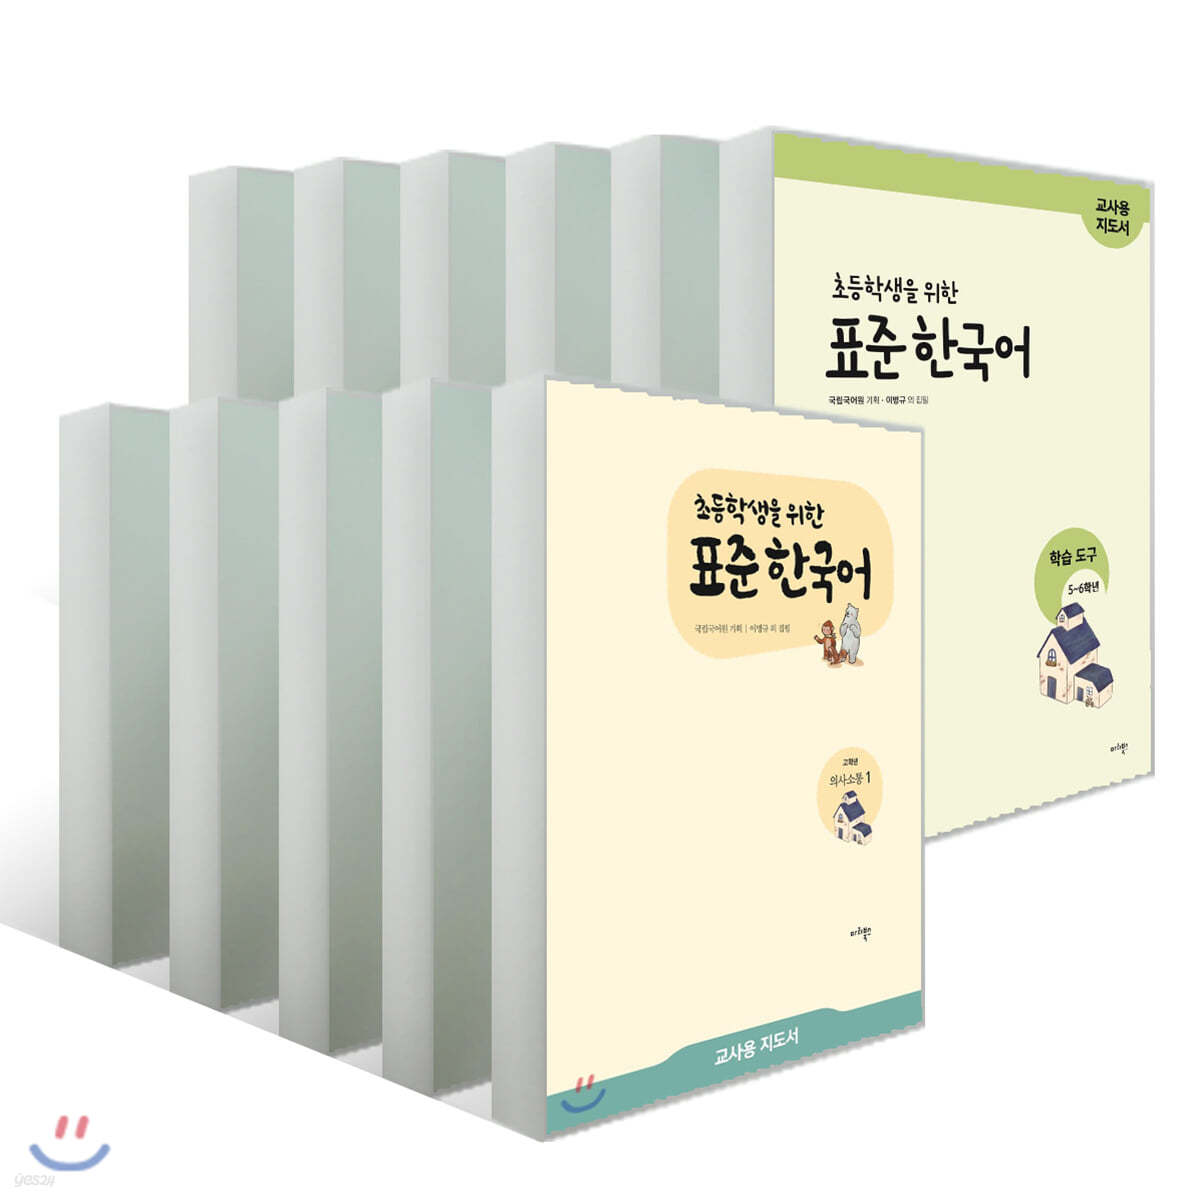 초등학생을 위한 표준 한국어 교사용 지도서 11권 세트